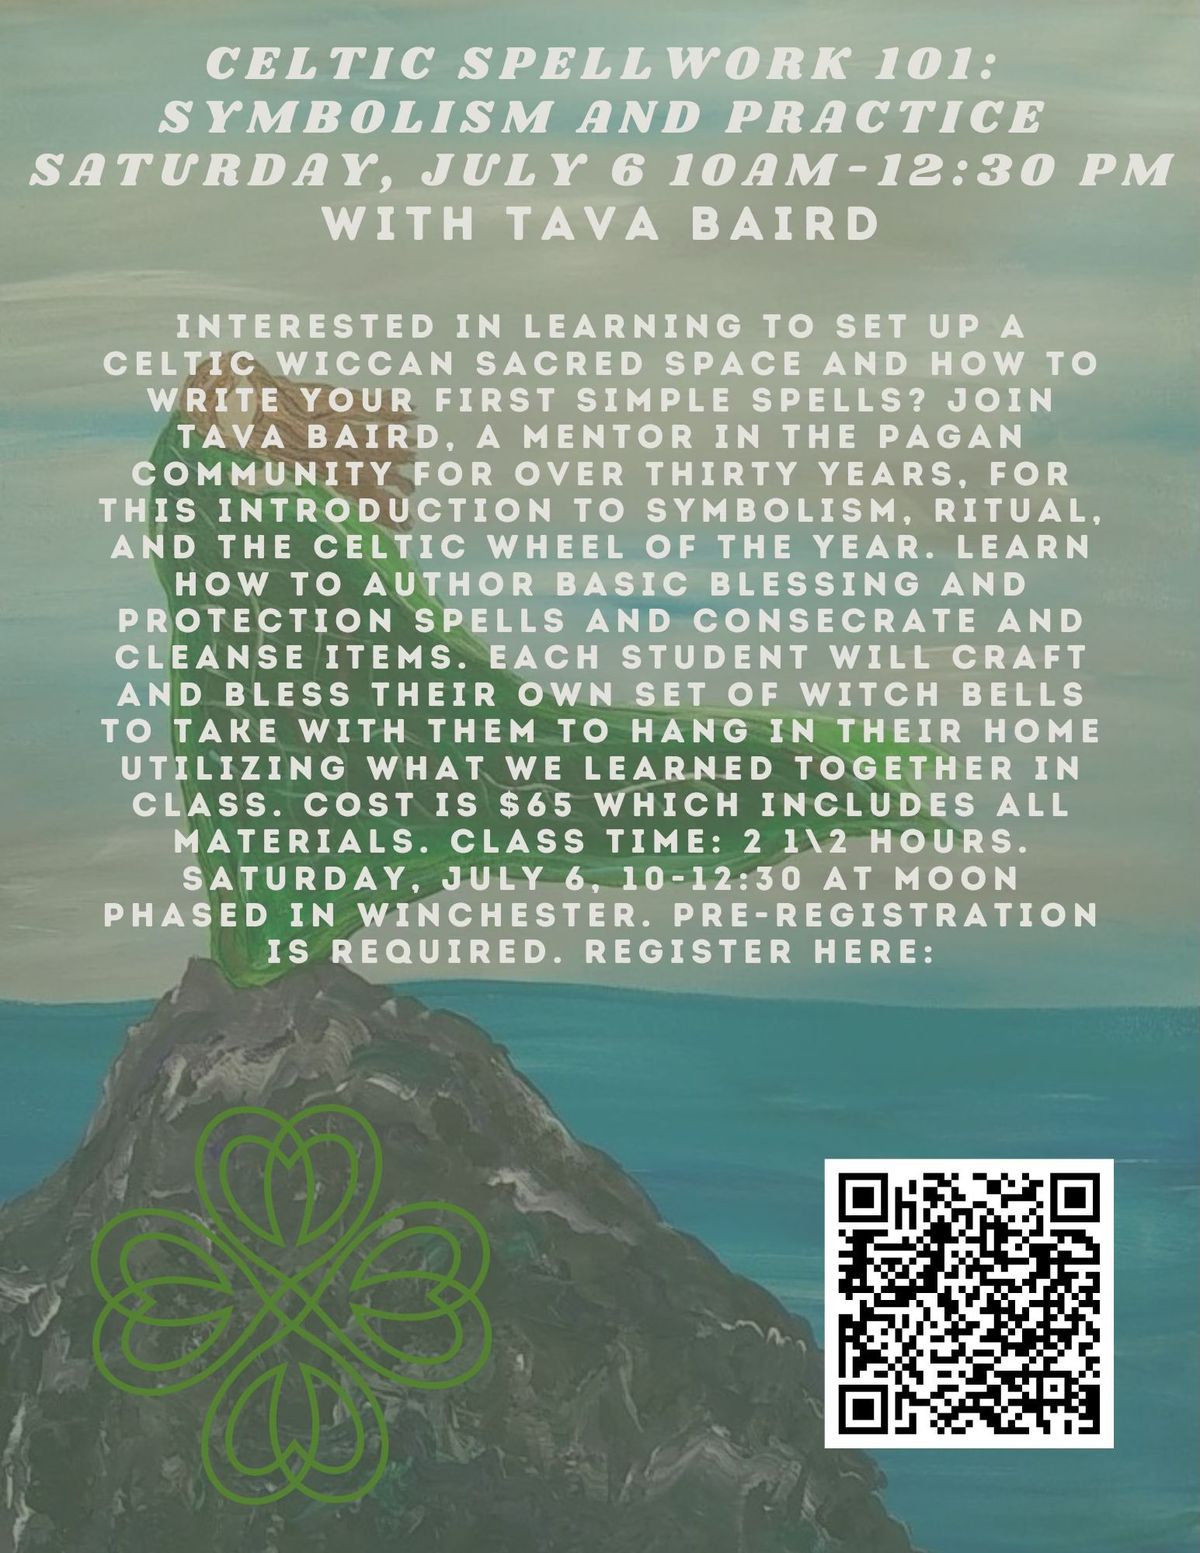 Celtic Spellwork 101 with Tava Baird